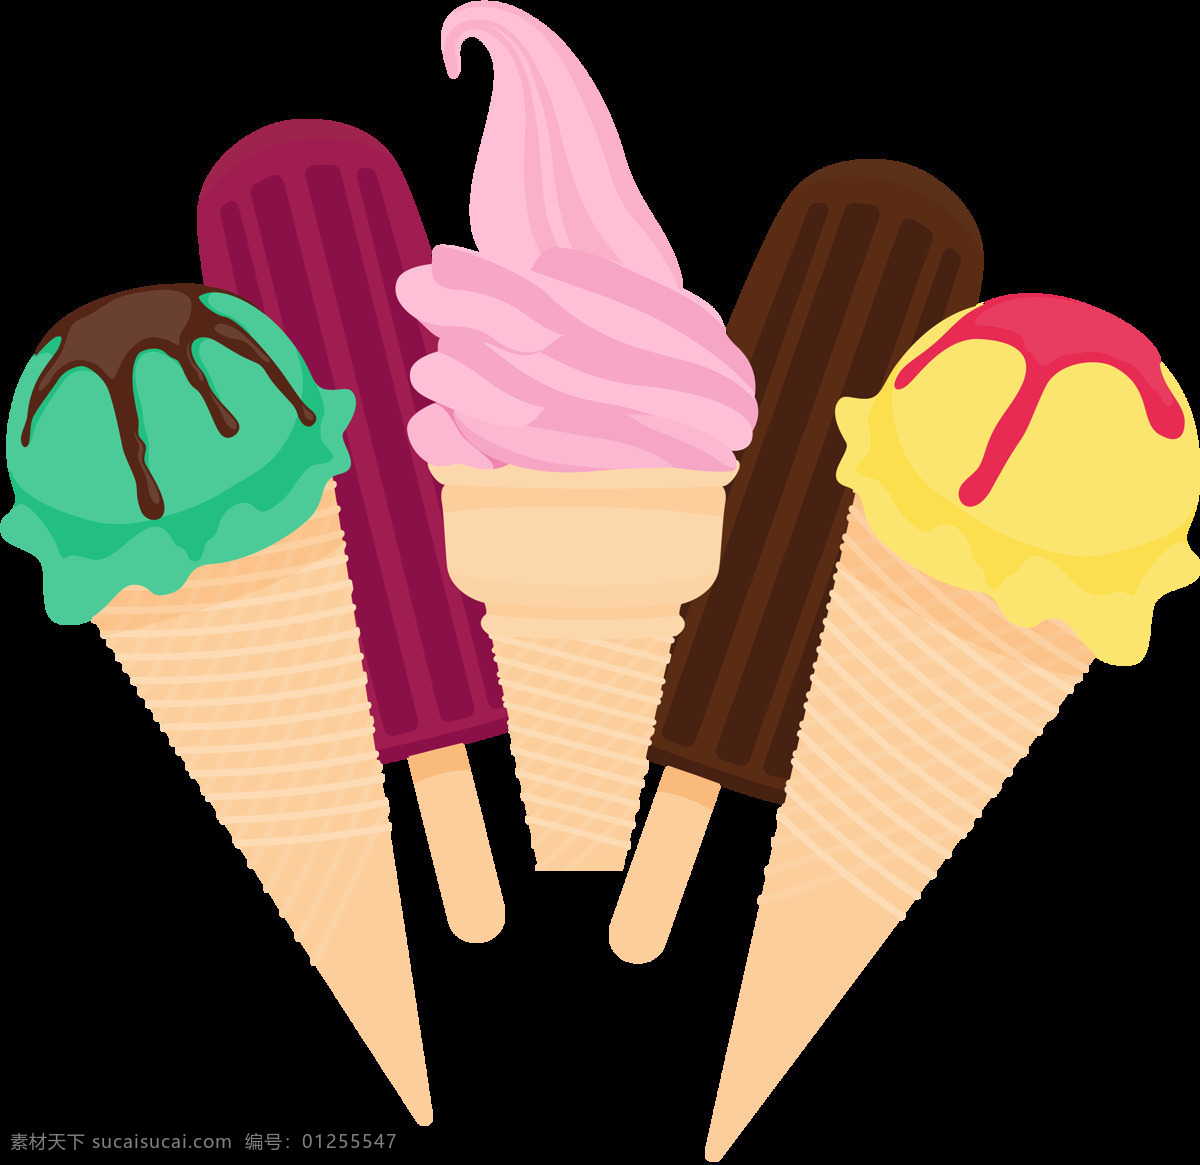 彩色 冰淇淋 插图 免 抠 透明 图 层 甜品图标 冷饮插图 清凉甜品 冰淇淋标志 雪糕图标 冰激凌图标 冰激凌插图 卡通冰淇淋 手绘冰淇淋 雪糕图案 冰淇淋促销 冰淇淋素材